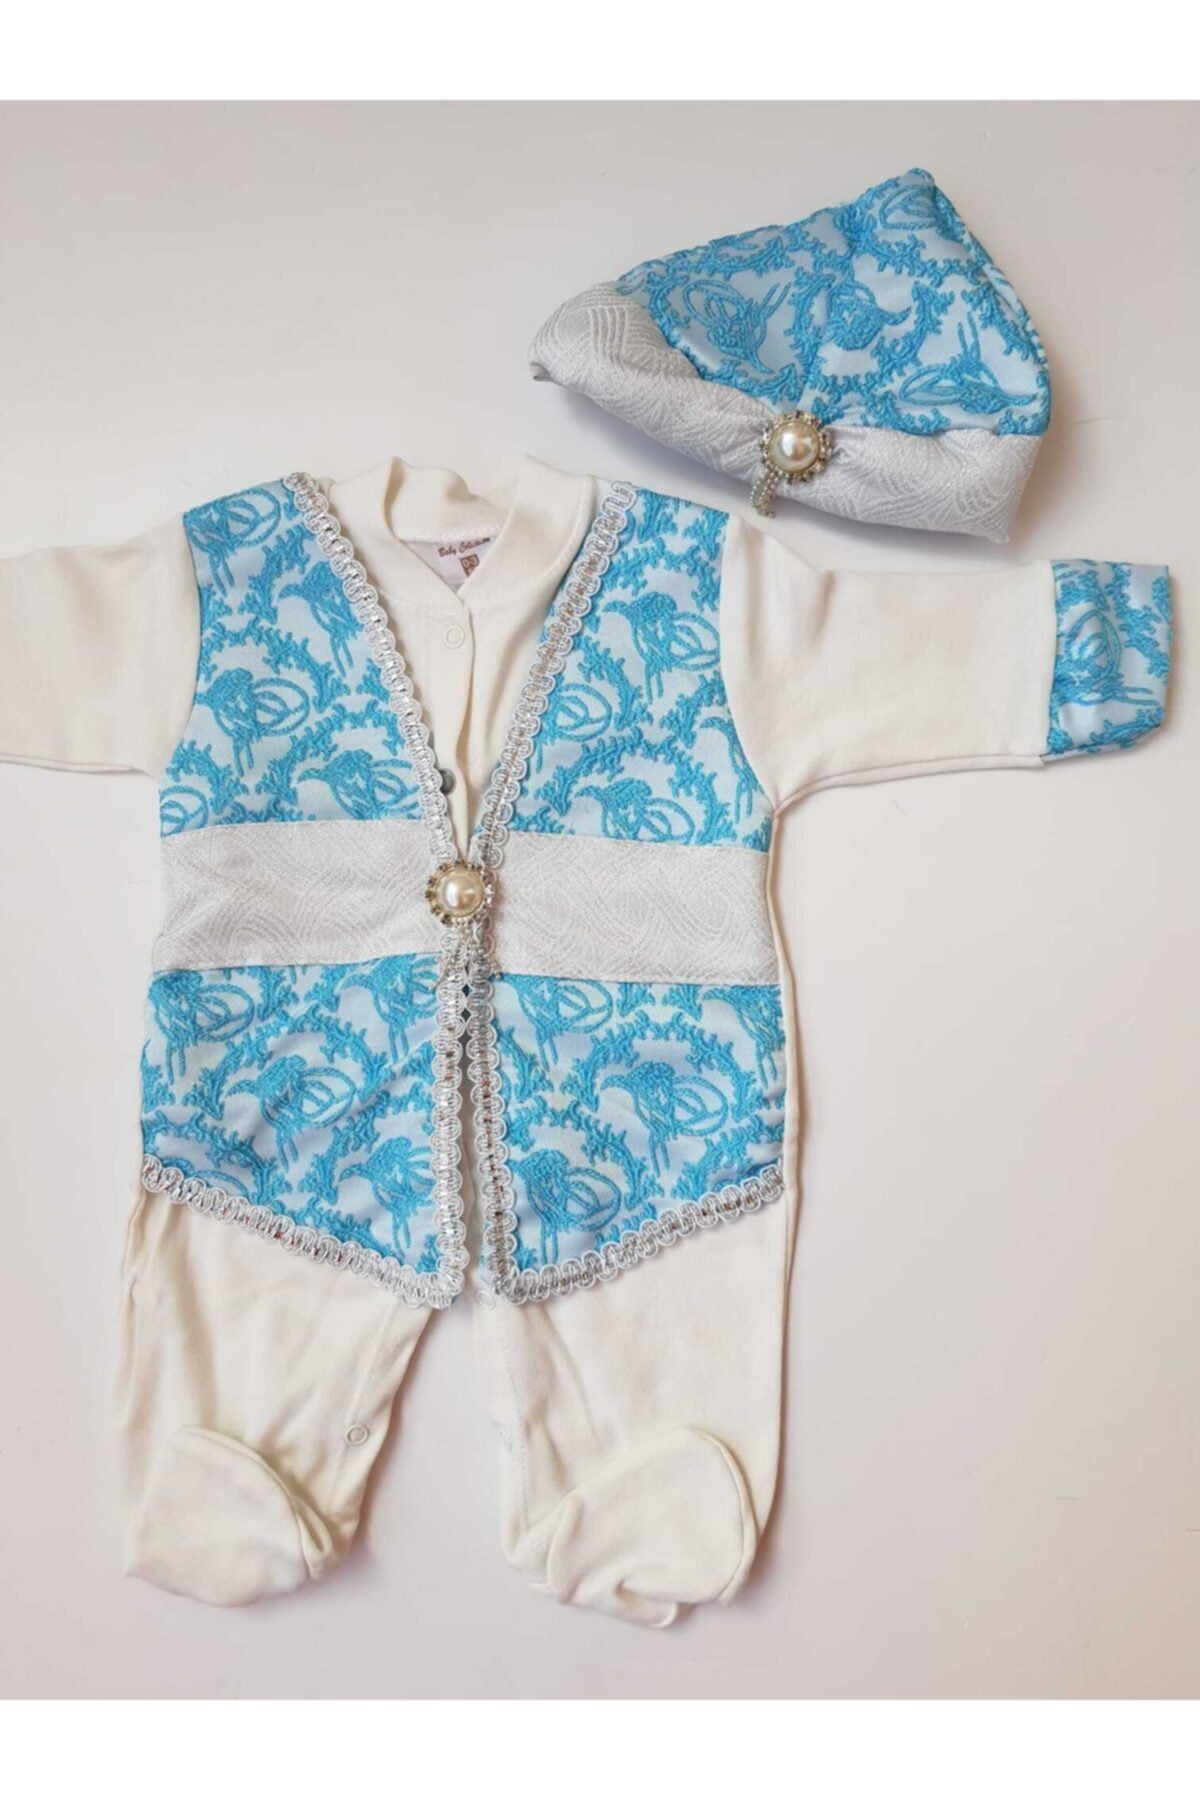 Ponpon Baby Yenidoğan Erkek Bebek Mevlütlük Şehzade Sünnetlik Sünnet Kıyafeti Bebek Hediyelik